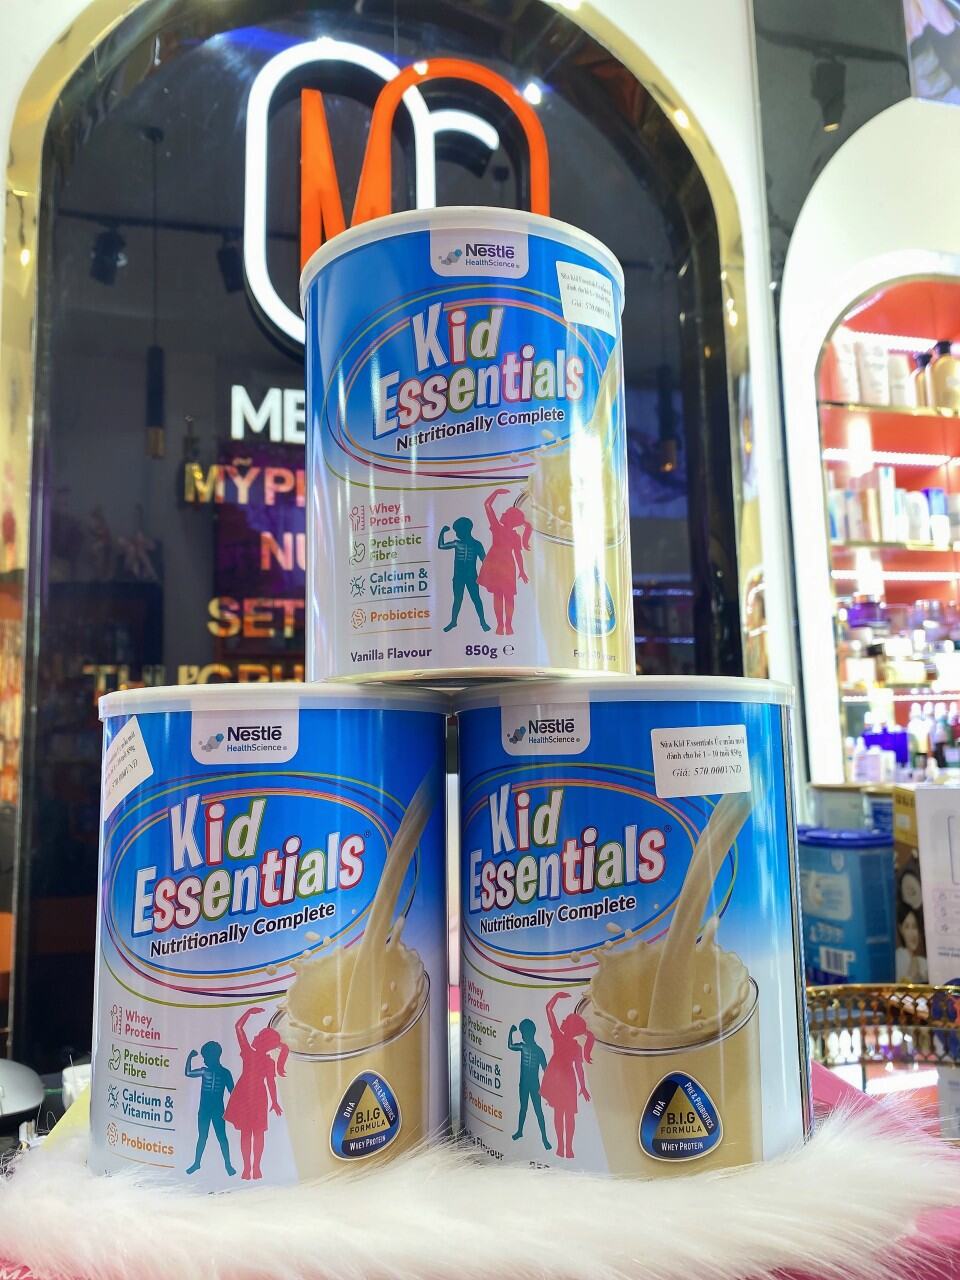 Sữa Kid Essentials Úc